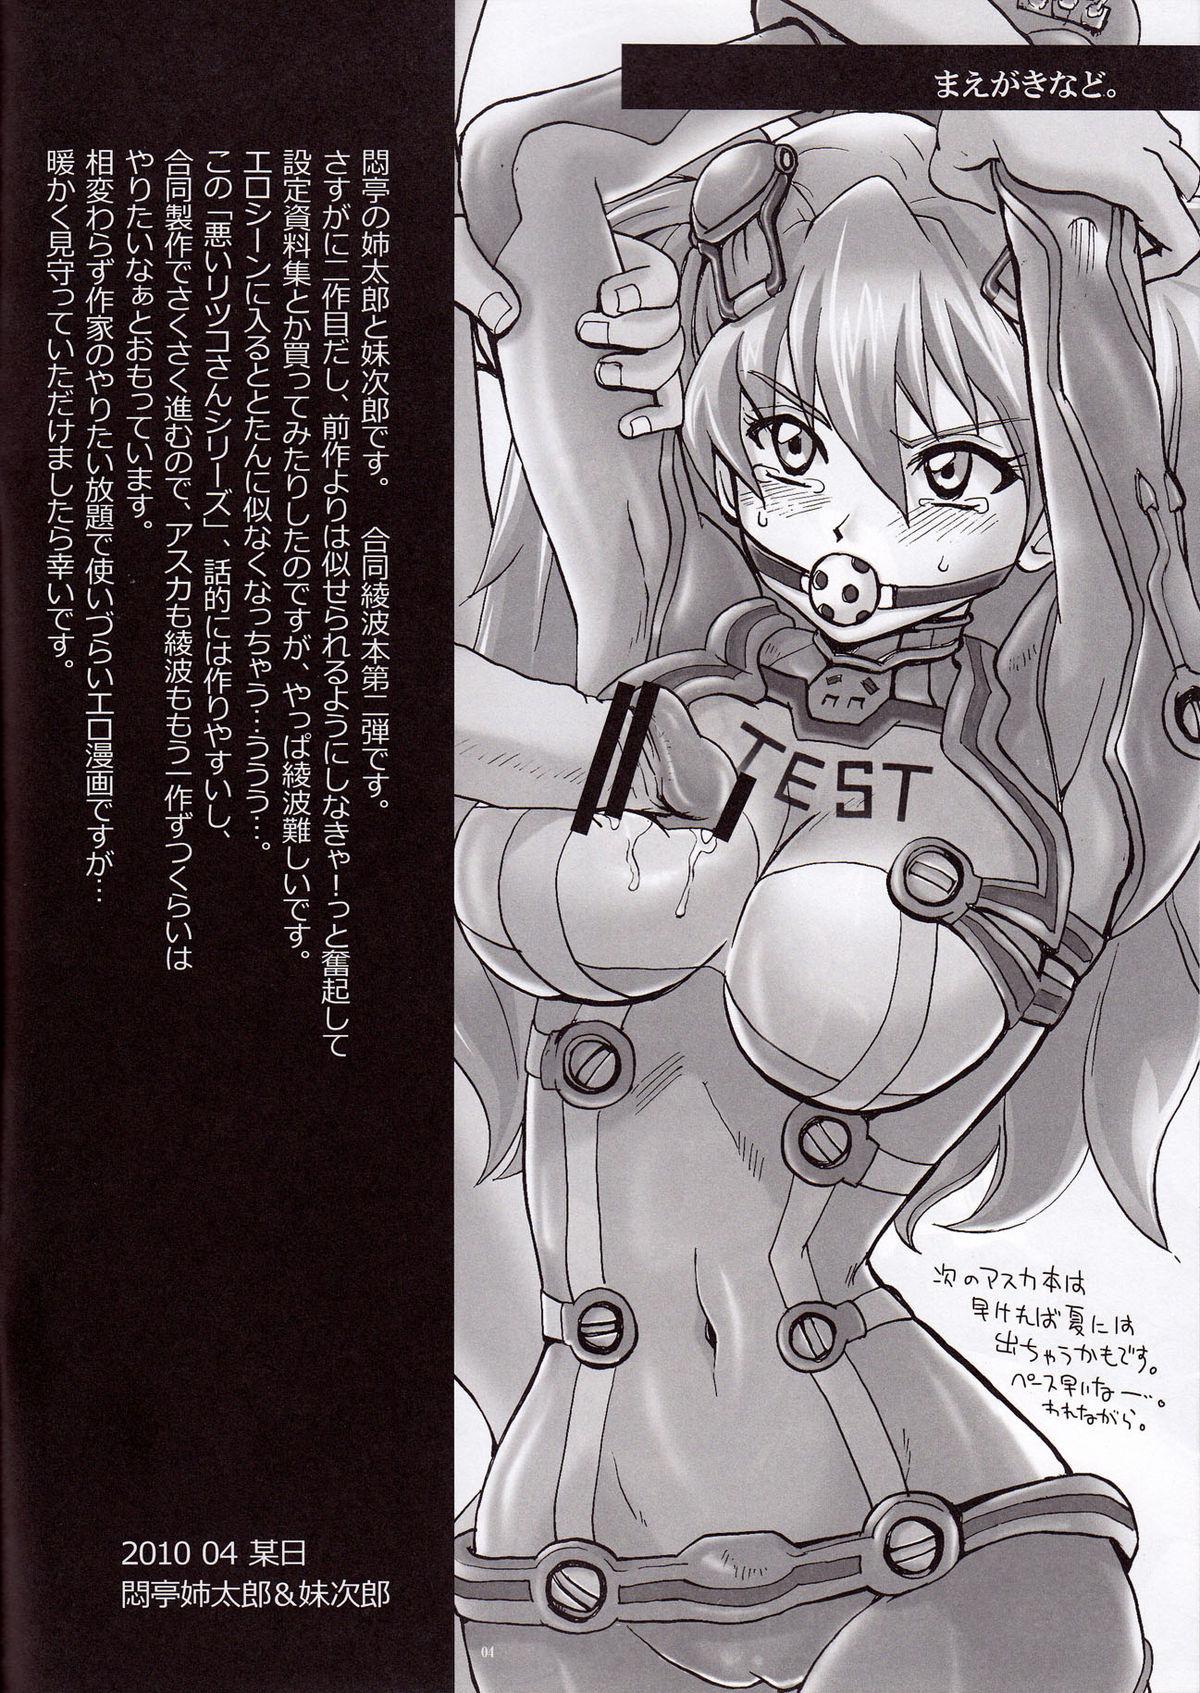 Style Ayanami Santai - Akagi Hakase no Kaizou Ningyou Settai - Neon genesis evangelion Amateur - Page 4